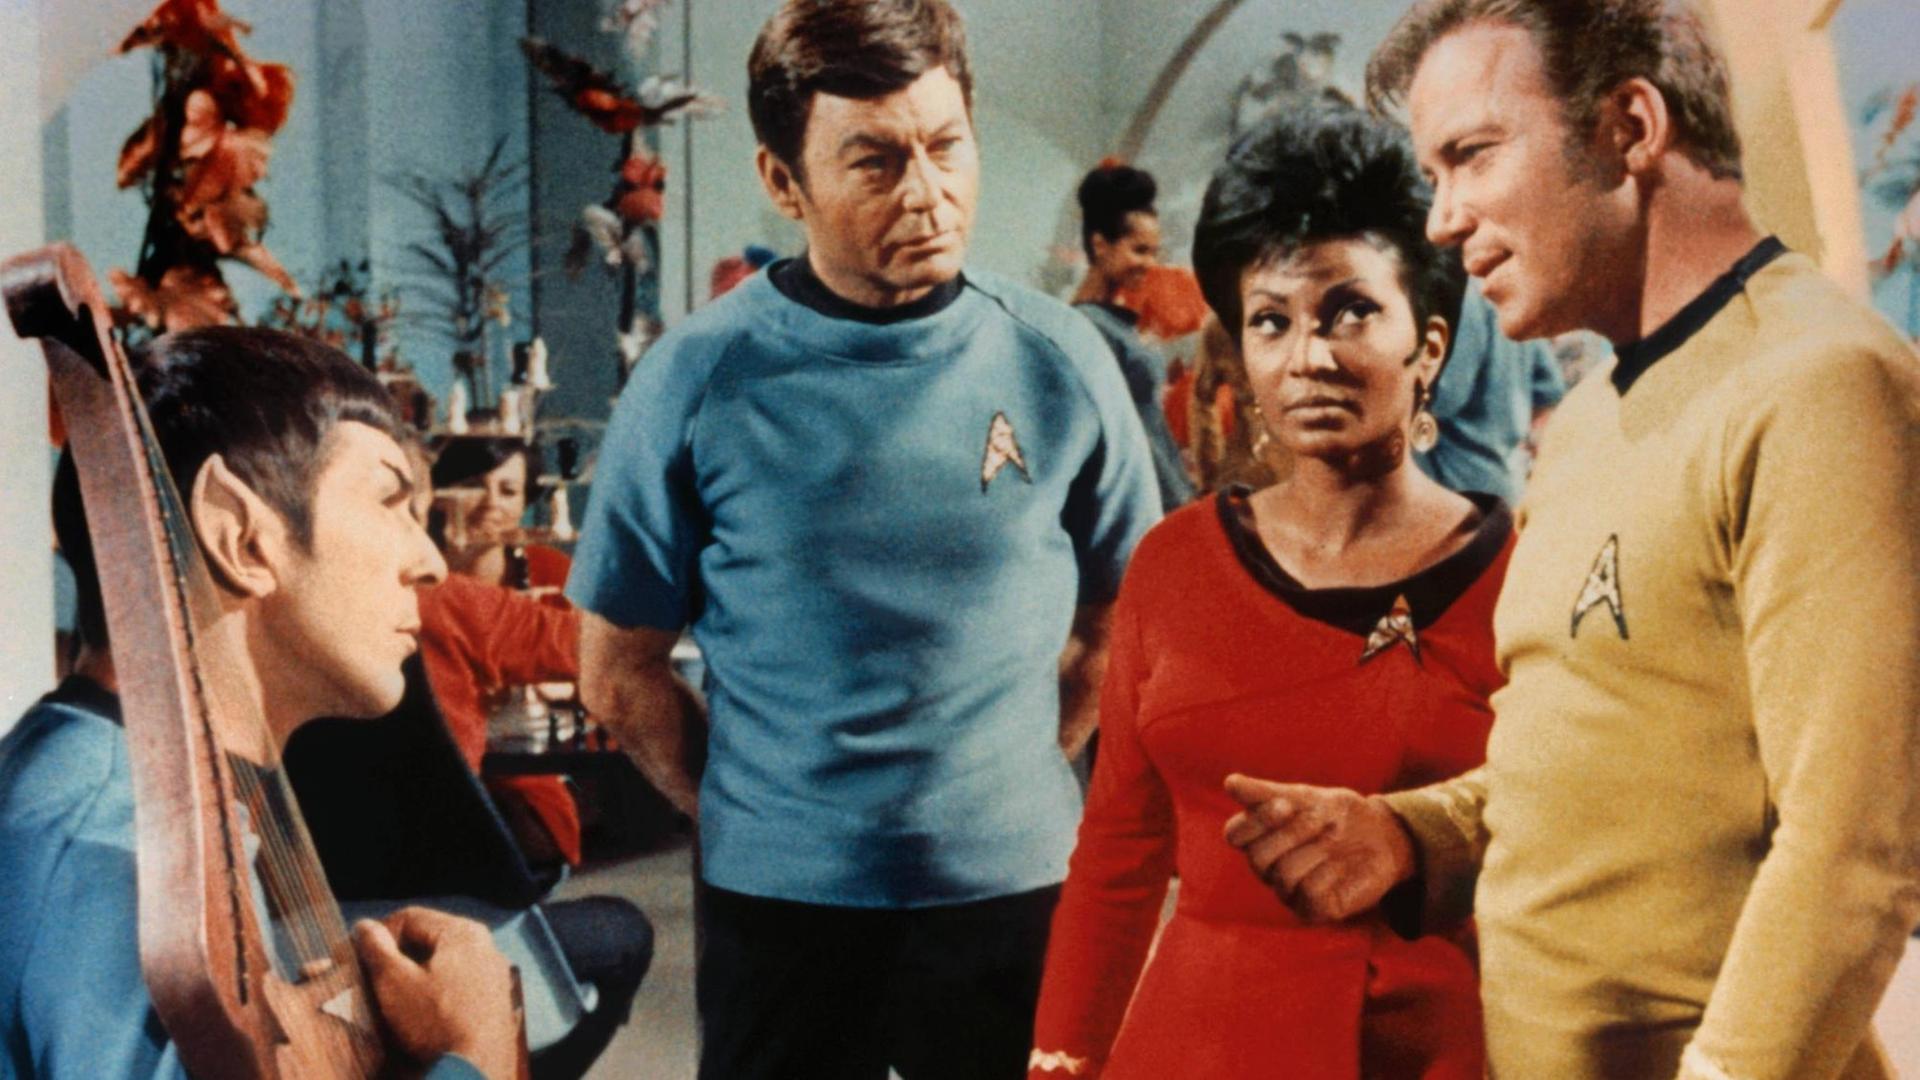 Szene aus der US-Fernsehserie "Star Trek" (1966-1969): Die Schwarze Schauspielerin Nichelle Nichols sowie die Schauspieler Leonard Nimoy, Deforest Kelley und William Shatner sprechen miteinander.